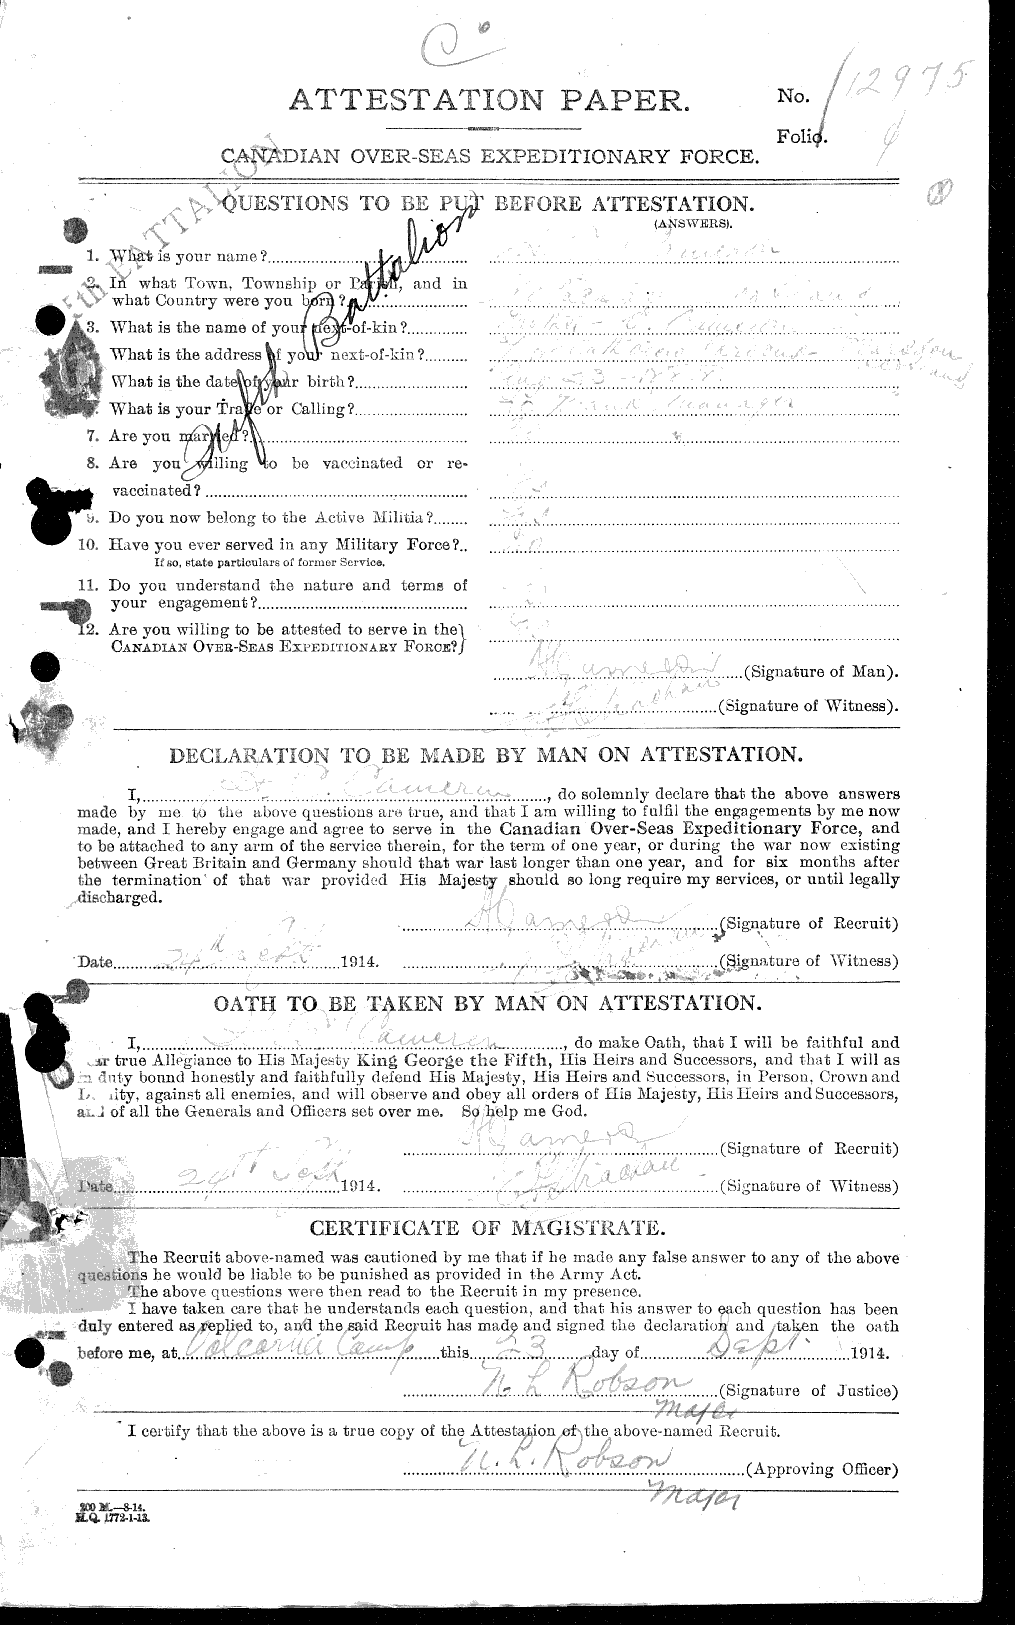 Dossiers du Personnel de la Première Guerre mondiale - CEC 002655a